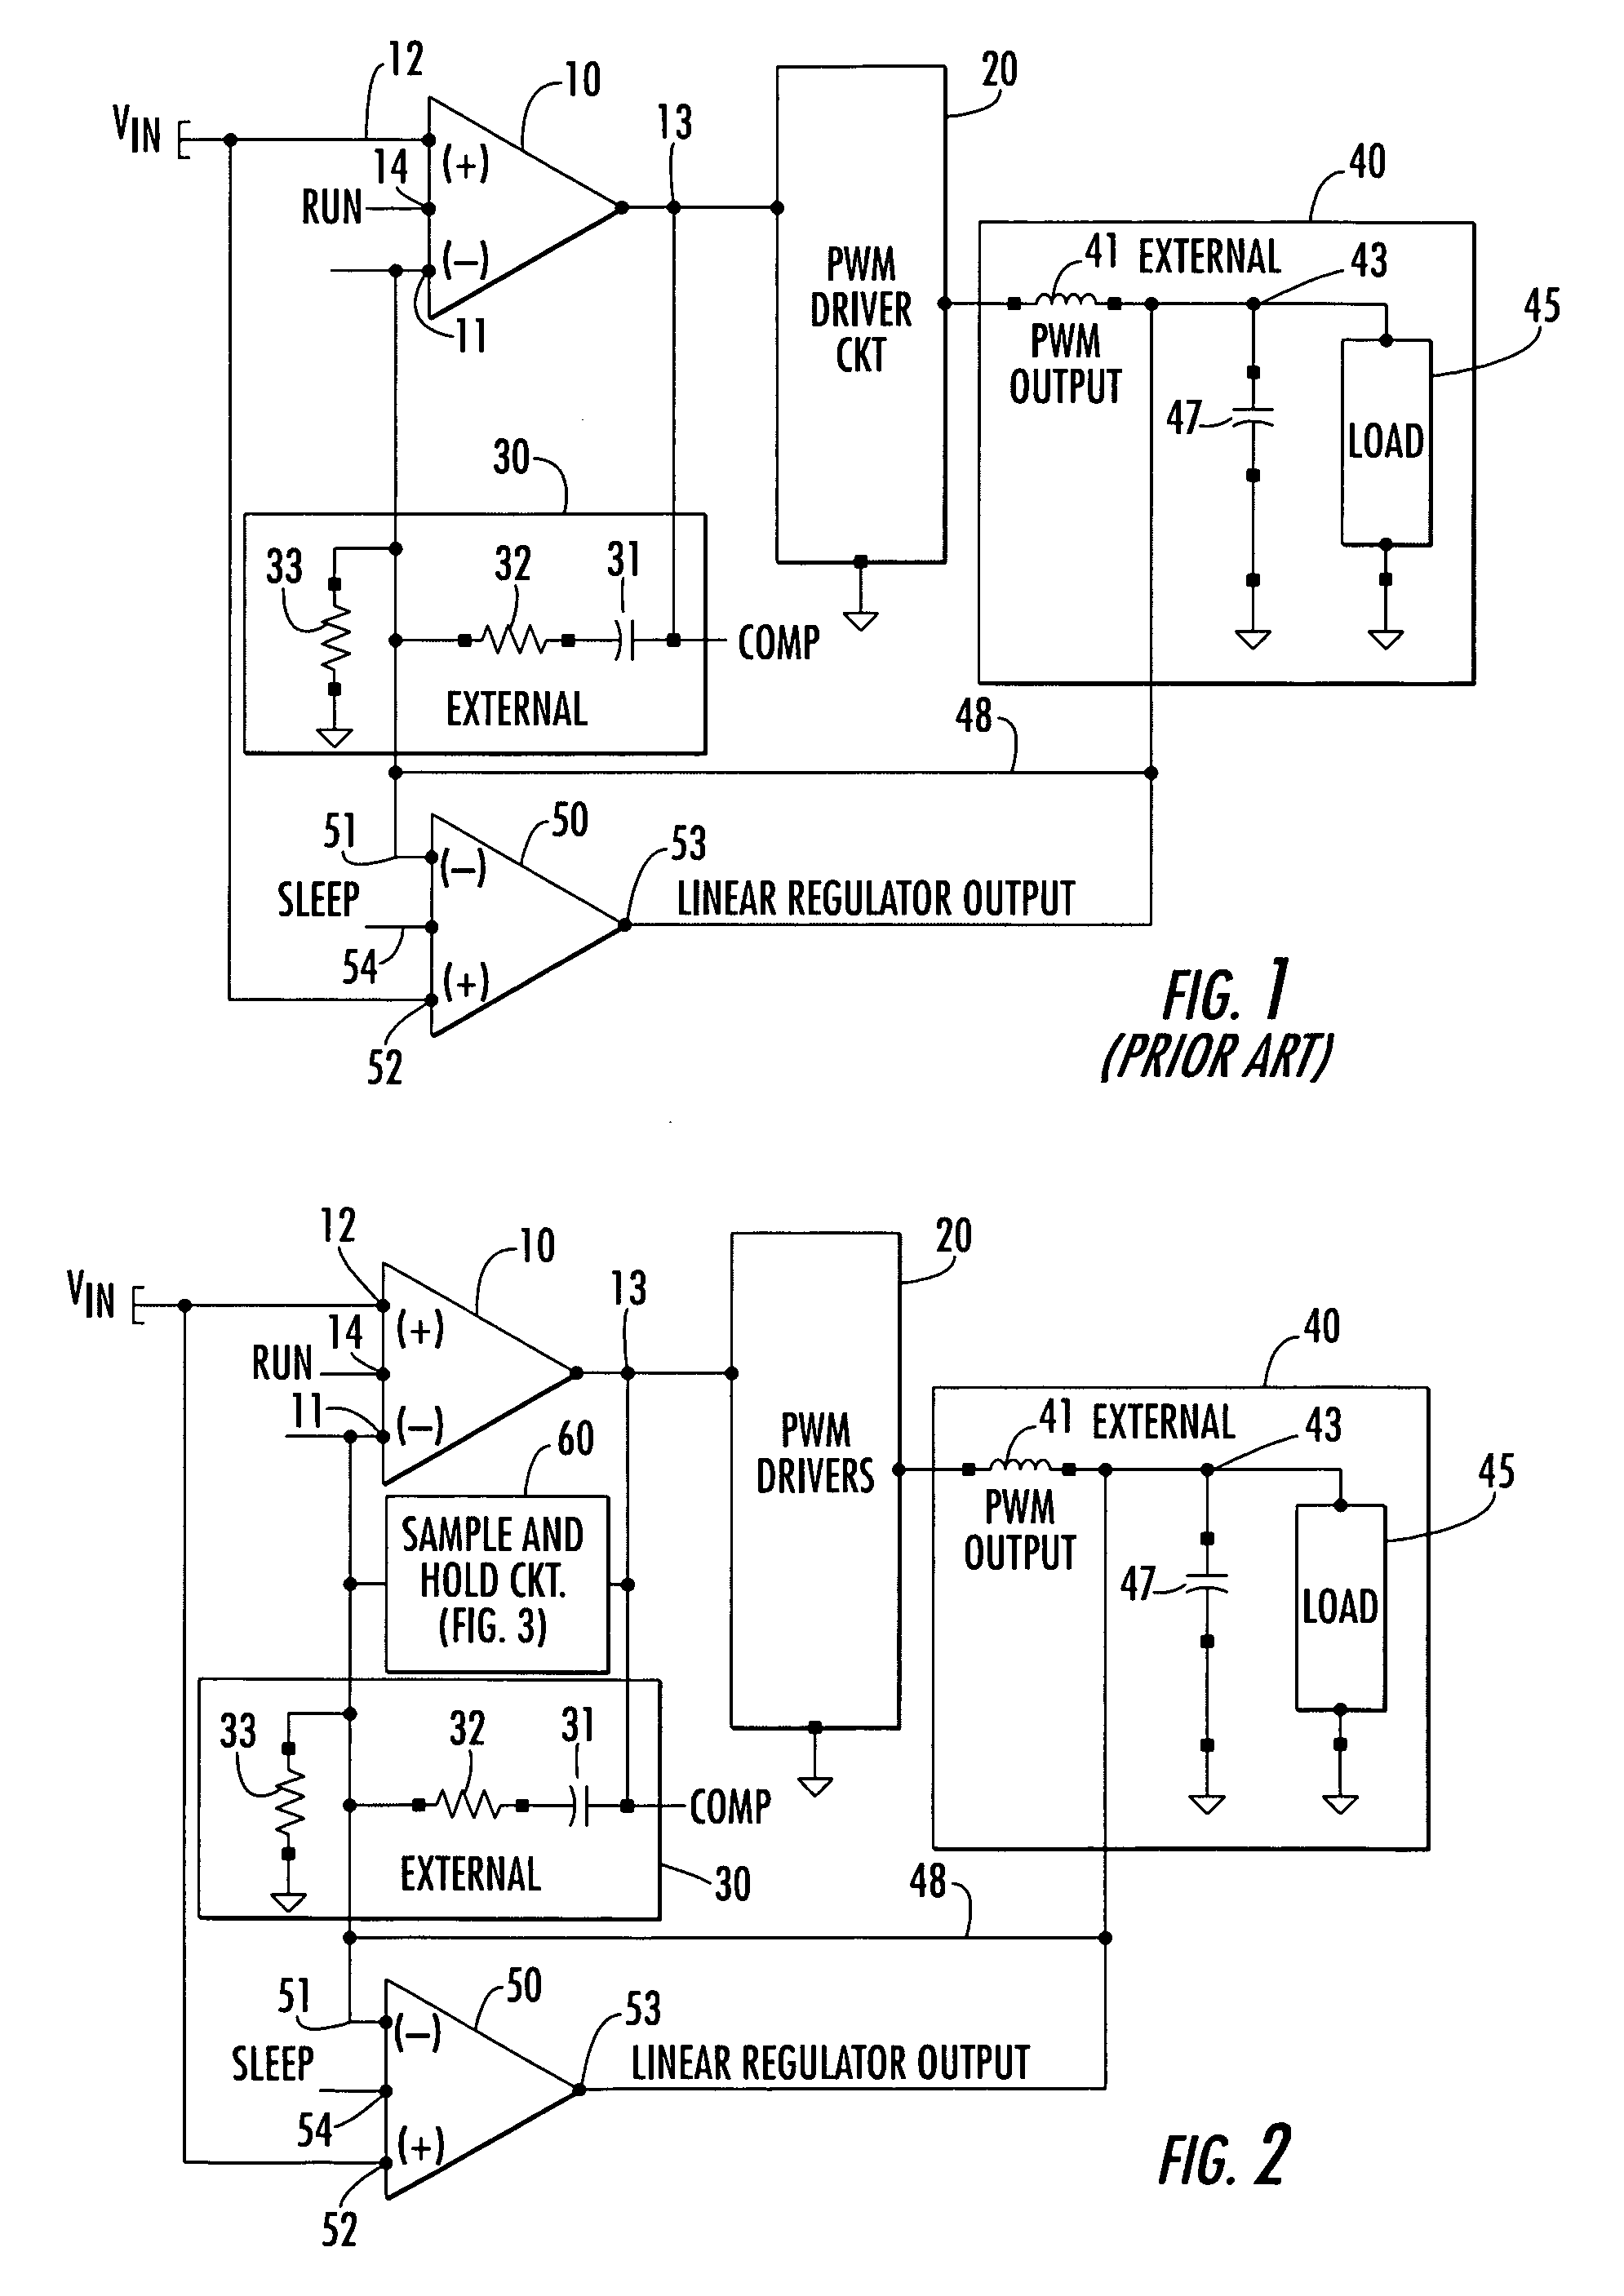 Compensation sample and hold for voltage regulator amplifier